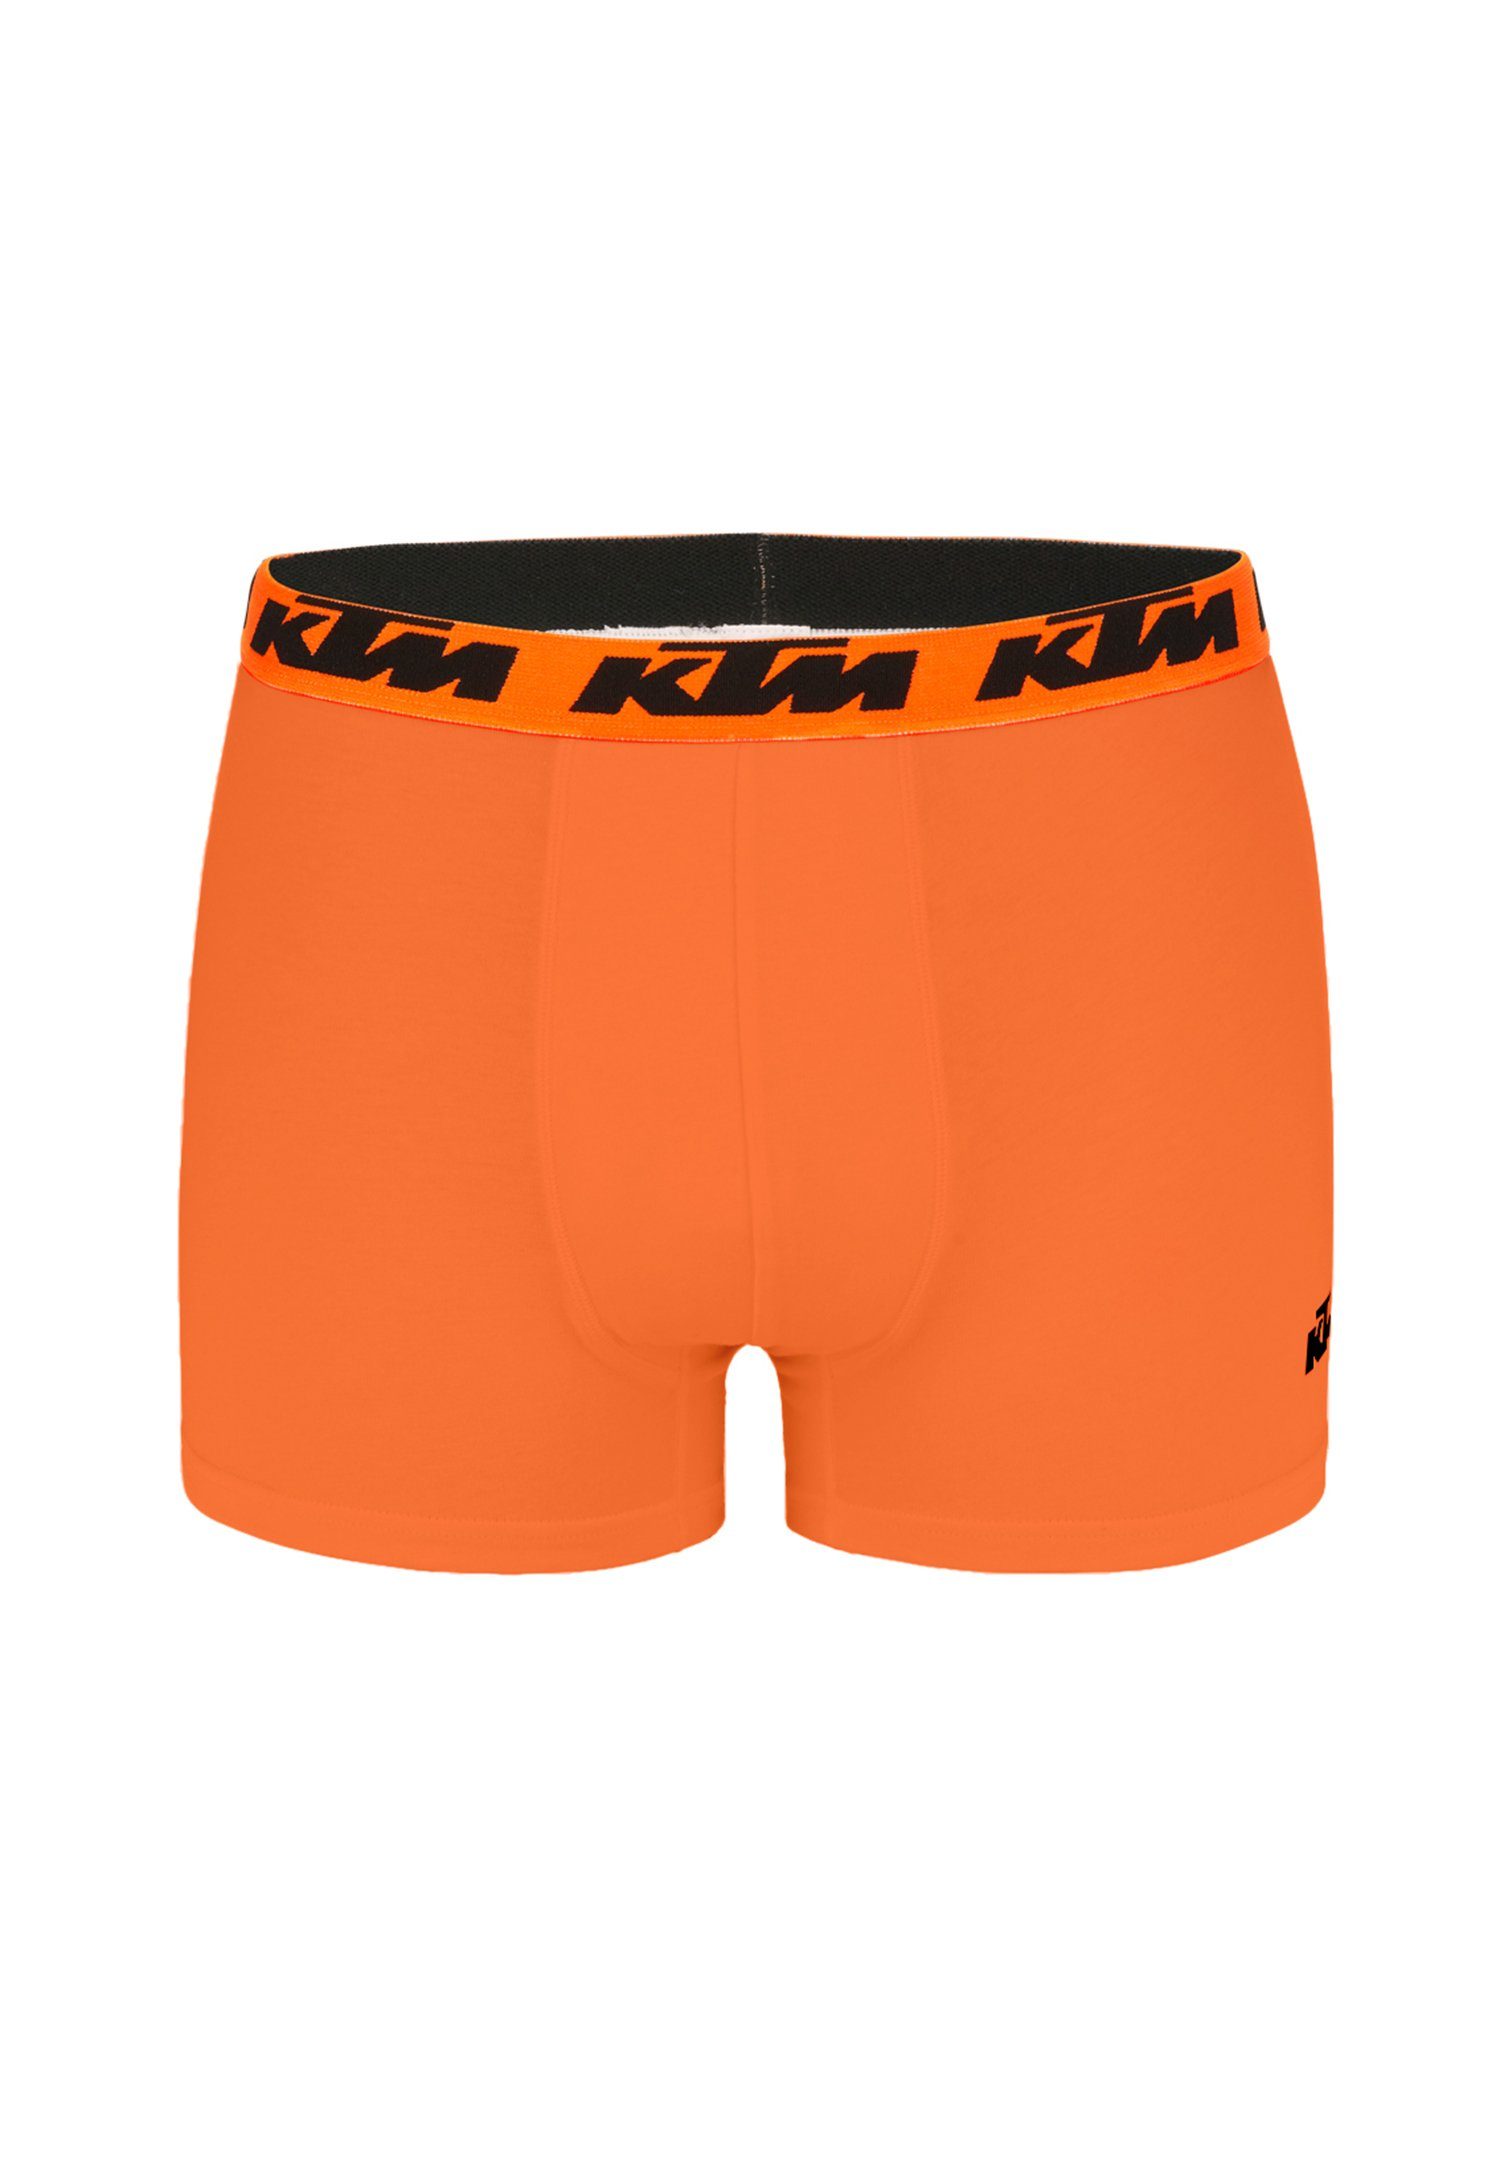 X2 Orange2 Cotton Pack KTM Light Boxershorts Grey Boxer (2-St) / Man